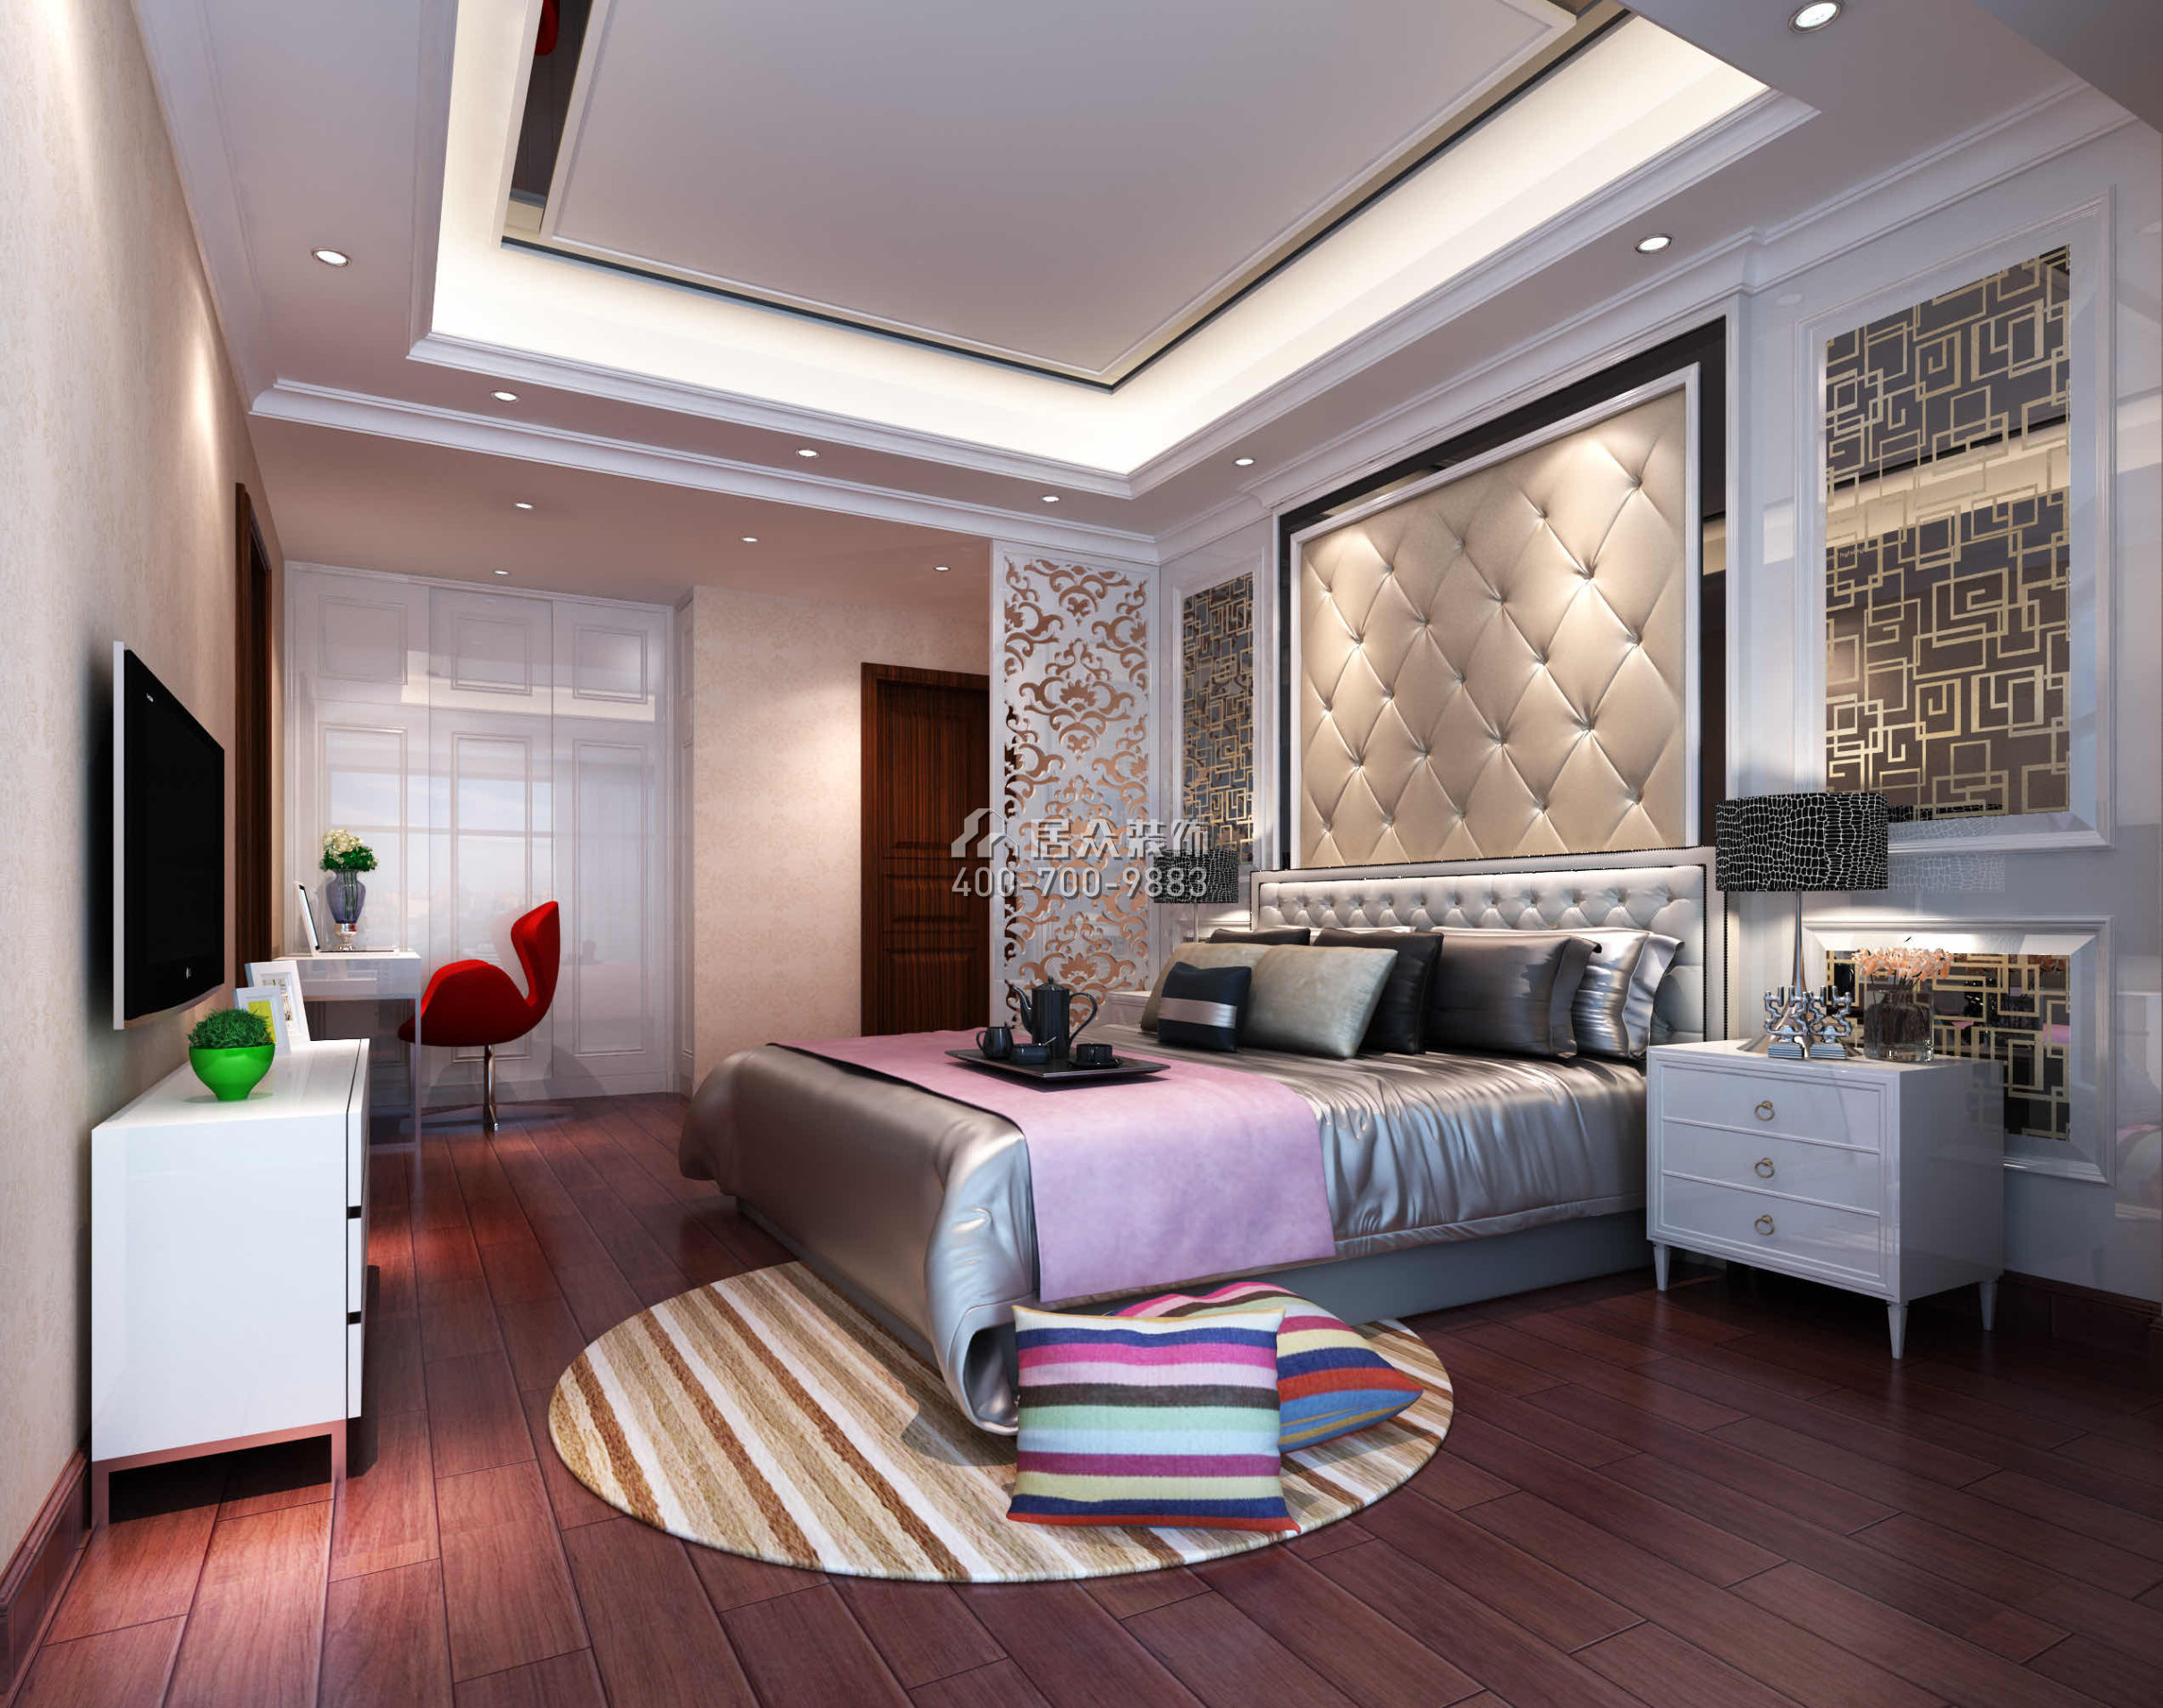 凯因新城天誉250平方米中式风格复式户型卧室装修效果图